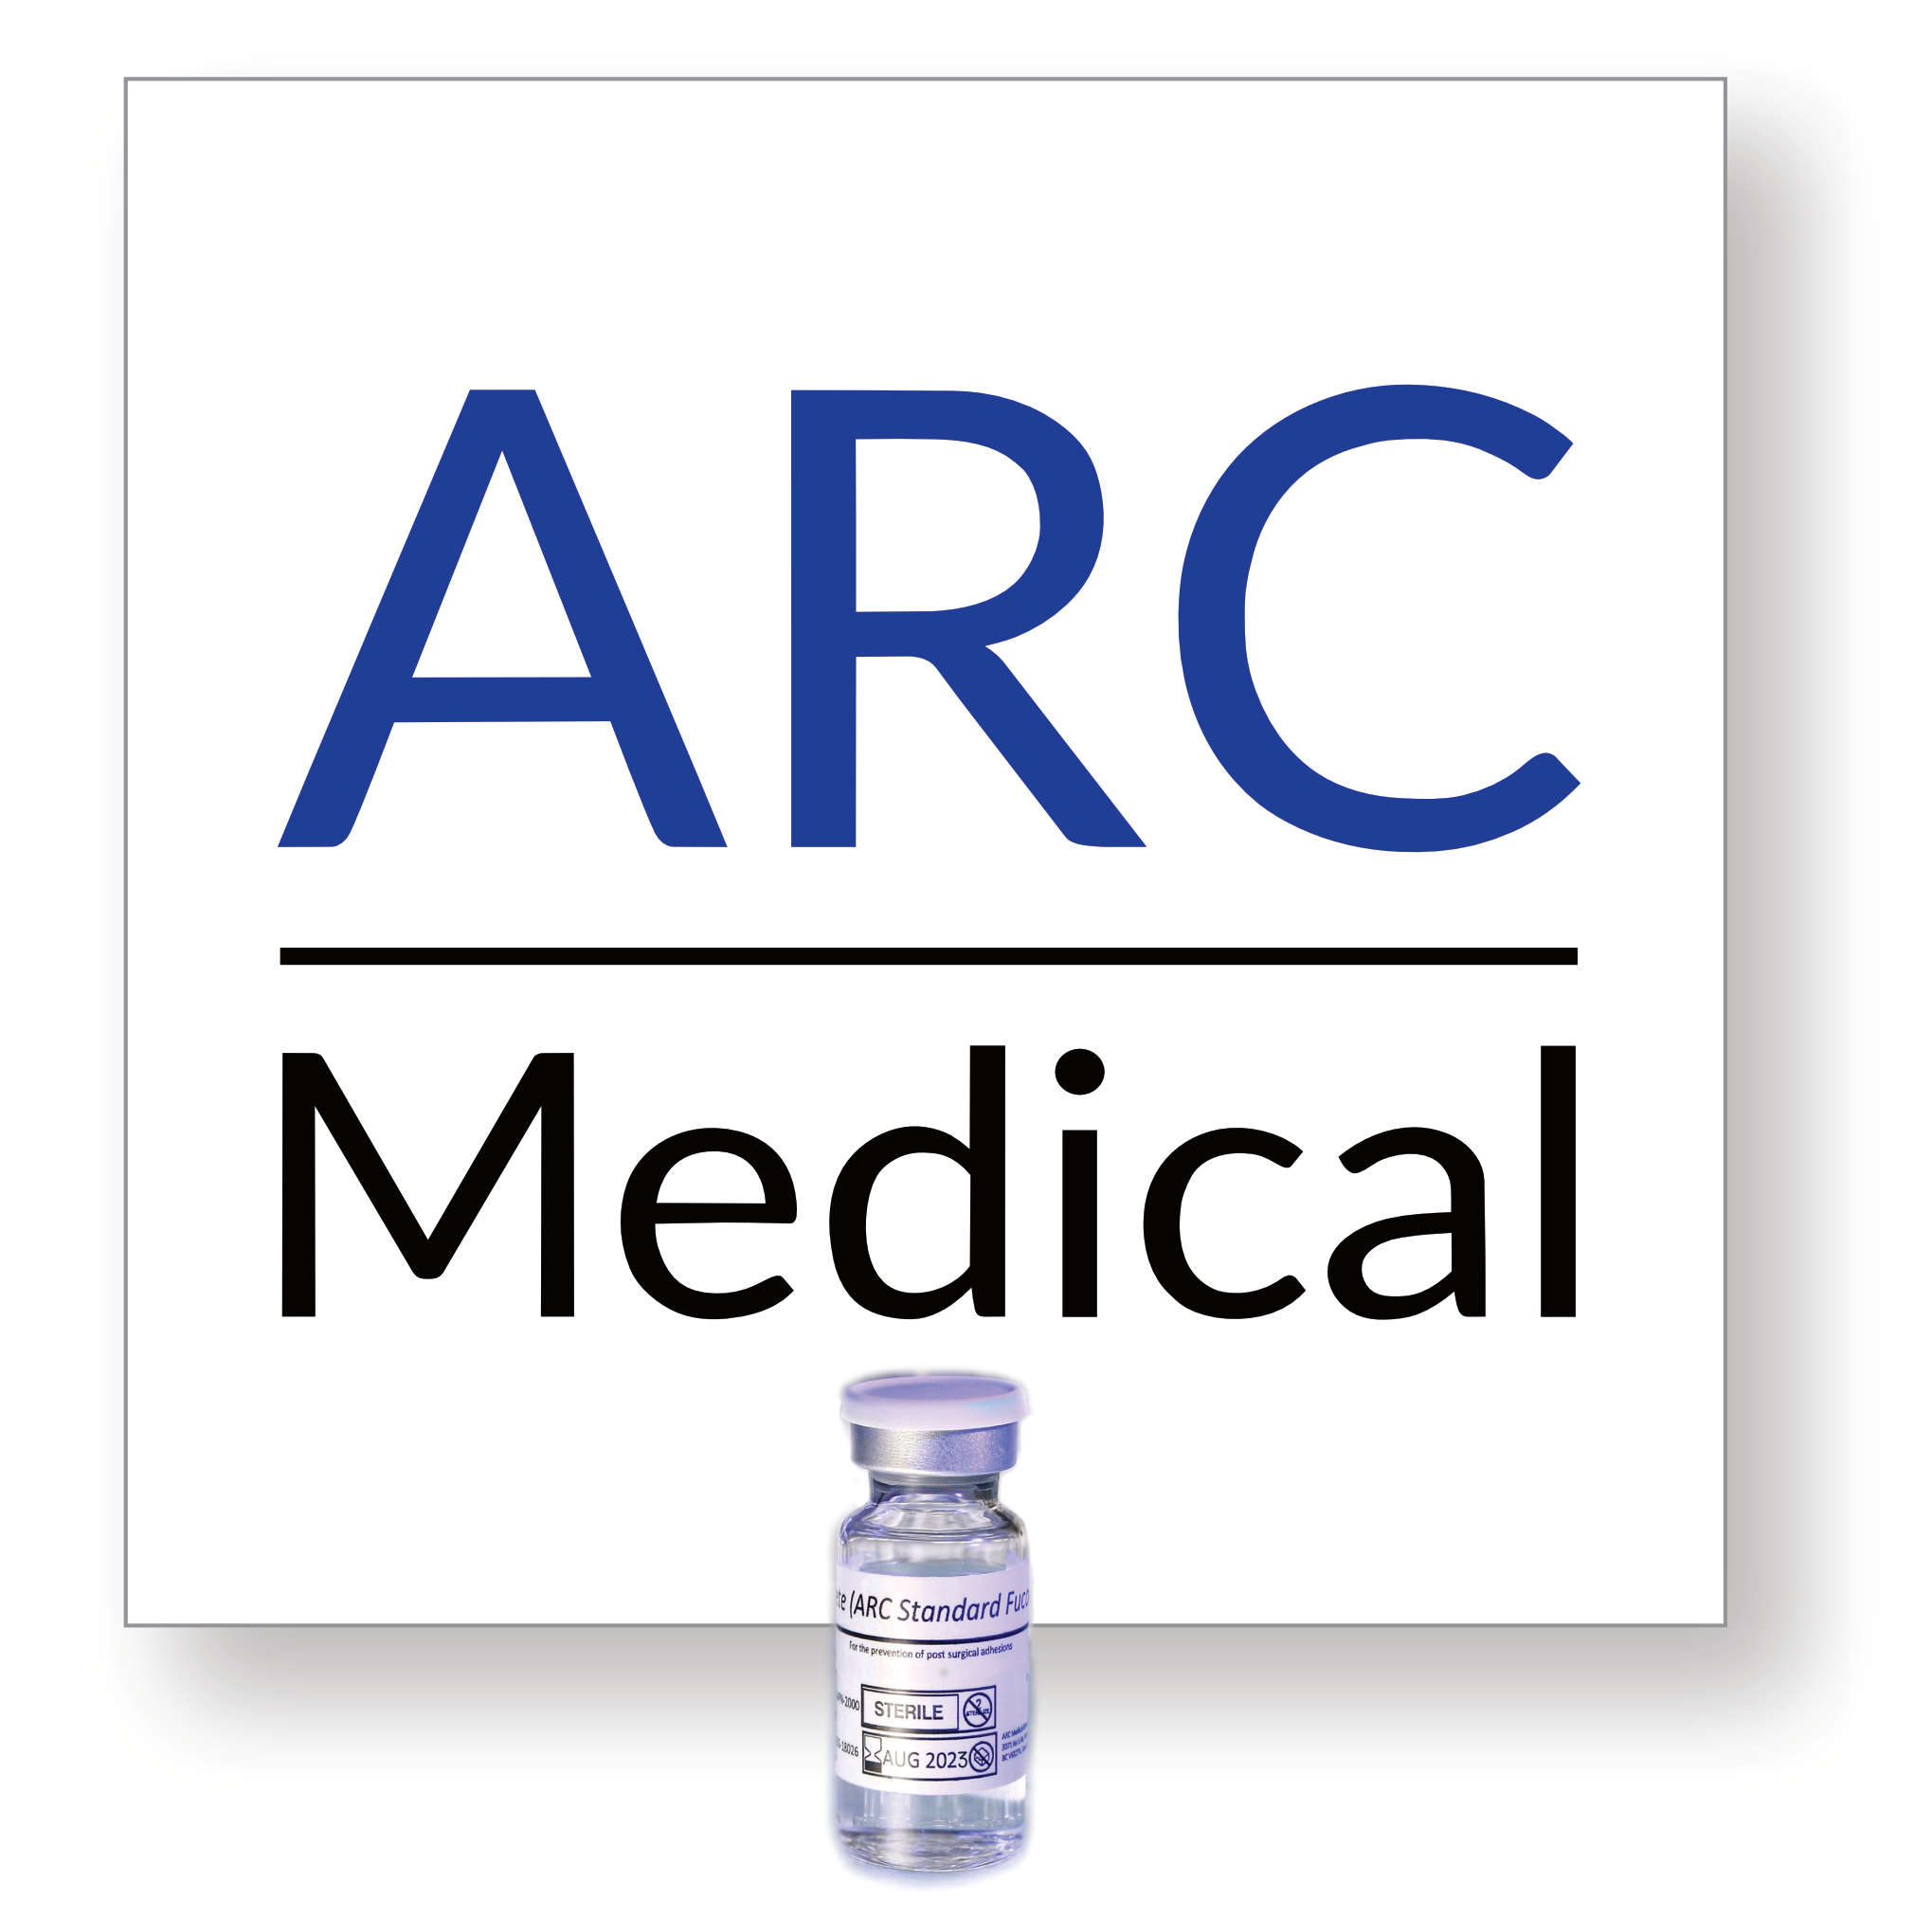 ARC Medical Inc.